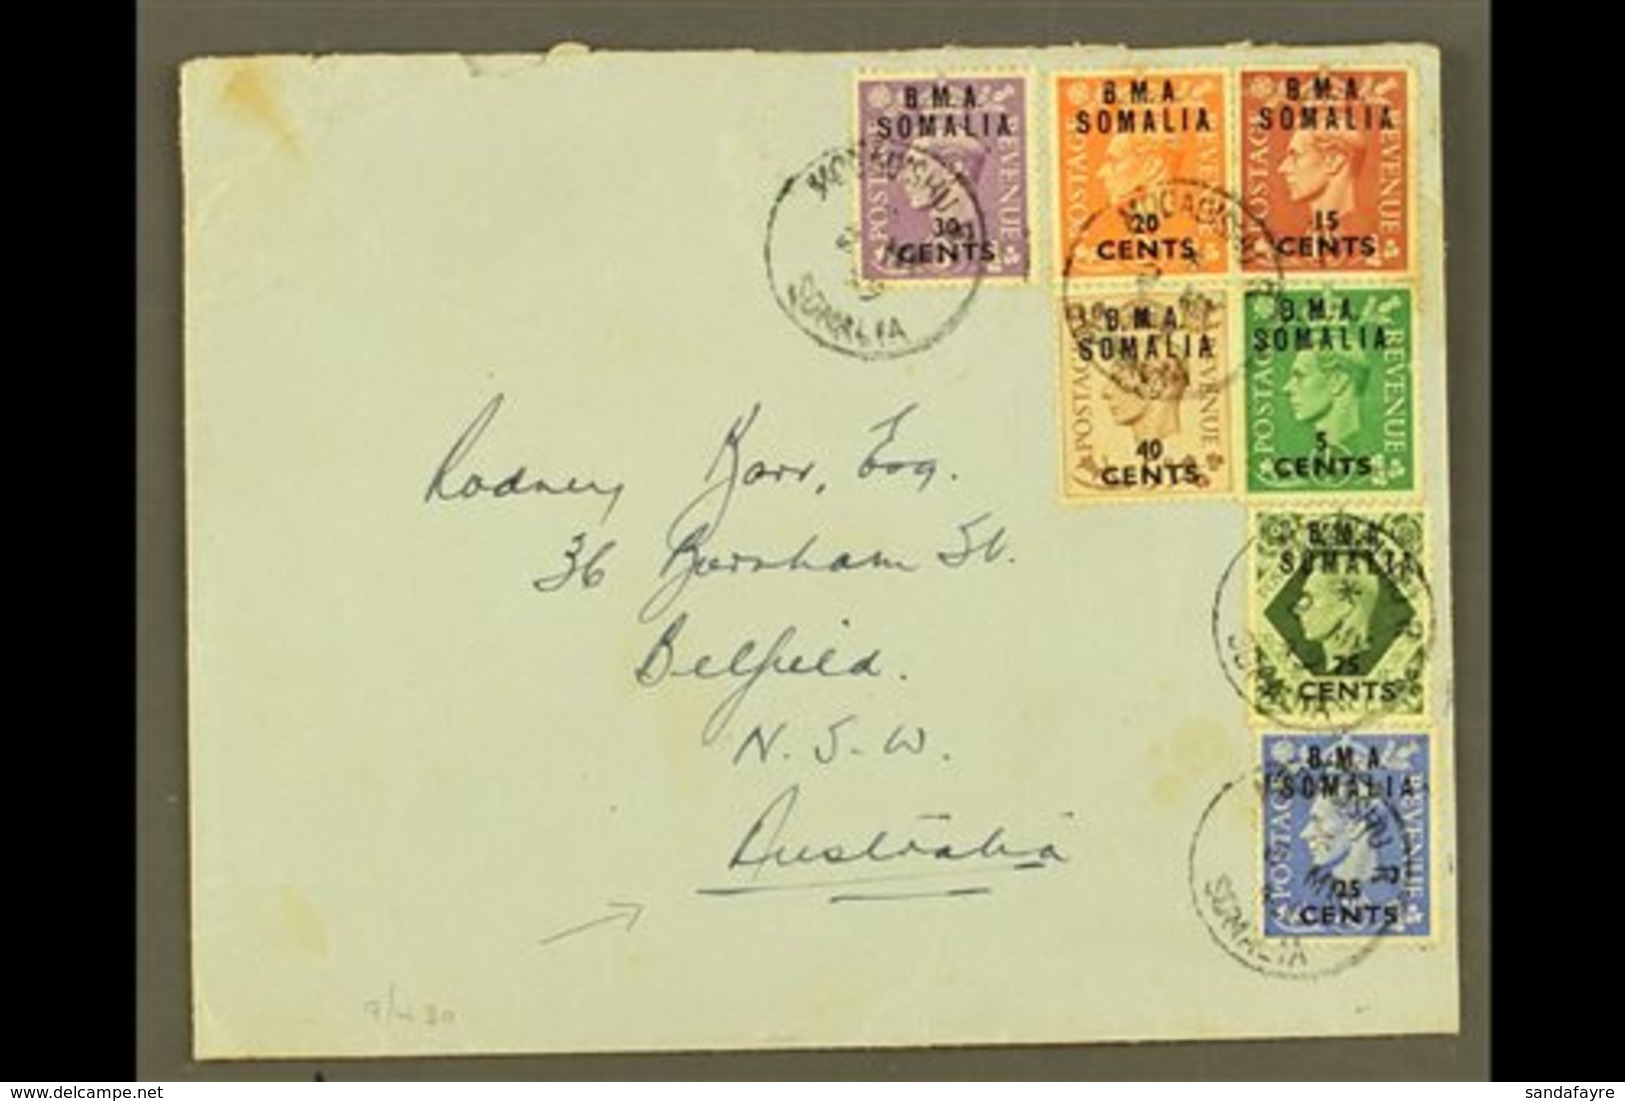 SOMALIA  1949 Plain Envelope To Australia, Franked KGVI 5c On ½d To 40c On 5d & 75c On 9d "B.M.A. SOMALIA" Ovpts, SG S10 - Italian Eastern Africa